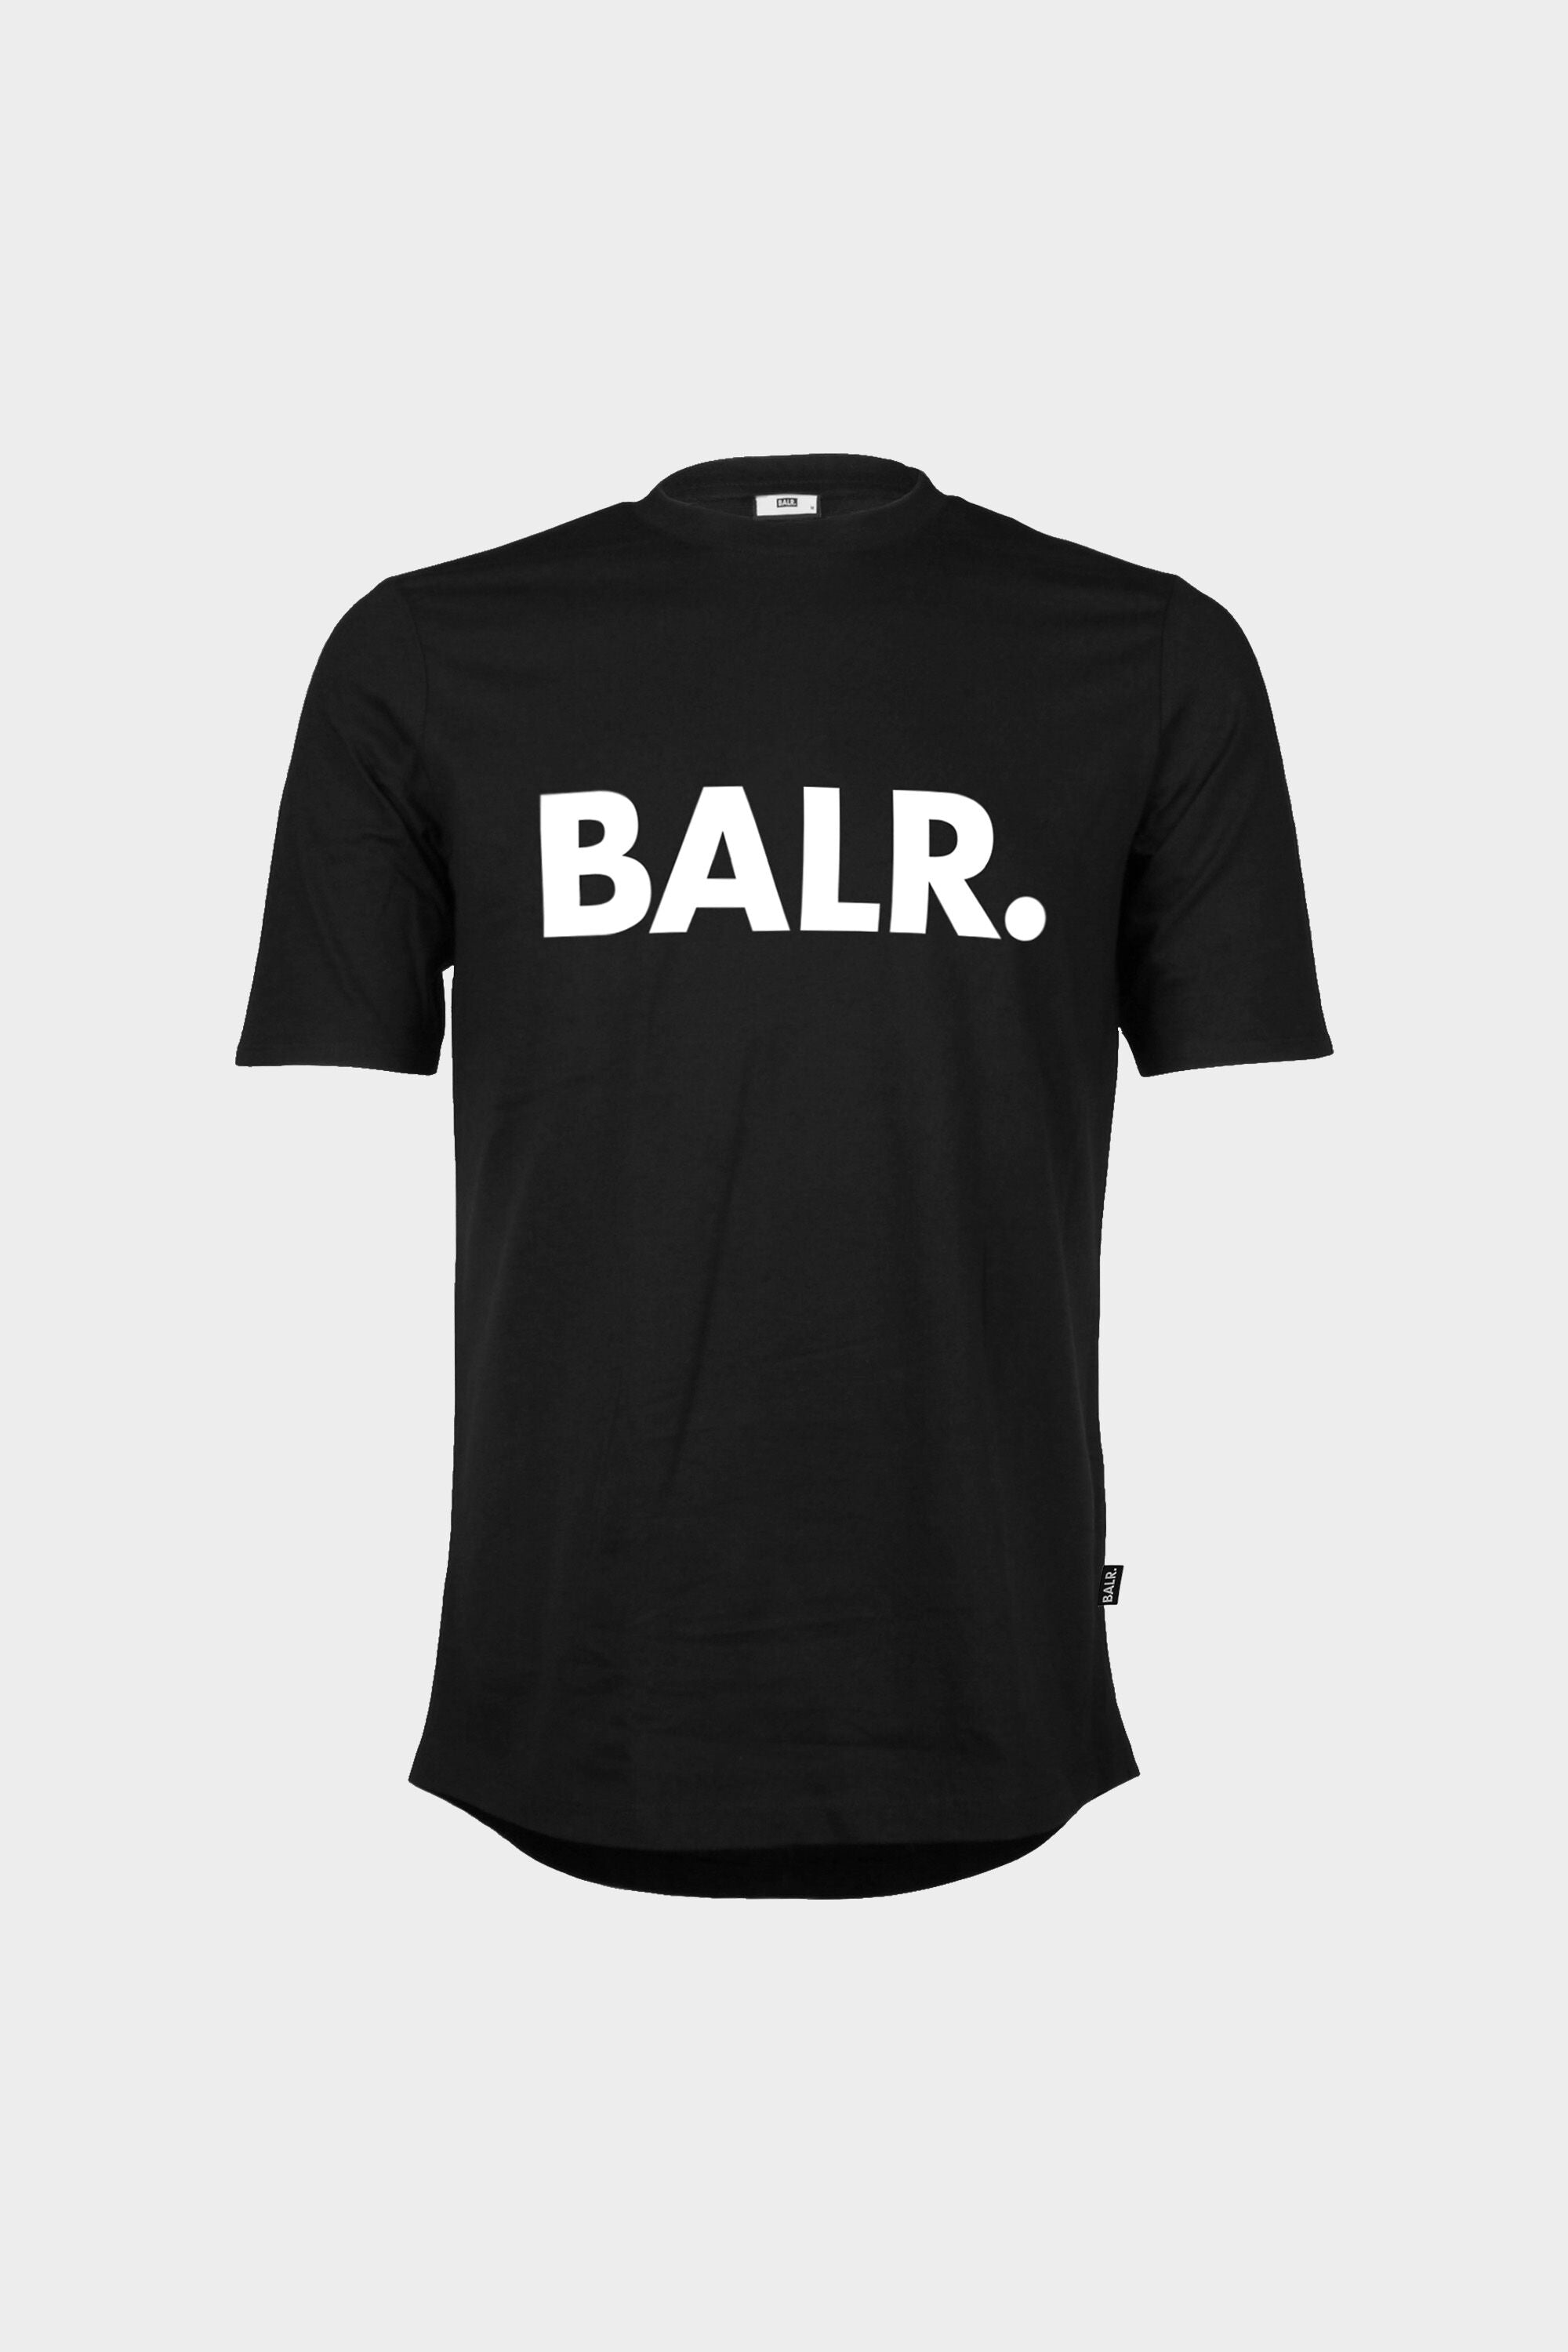 tilnærmelse by om Brand Athletic T-Shirt Men Black – BALR.